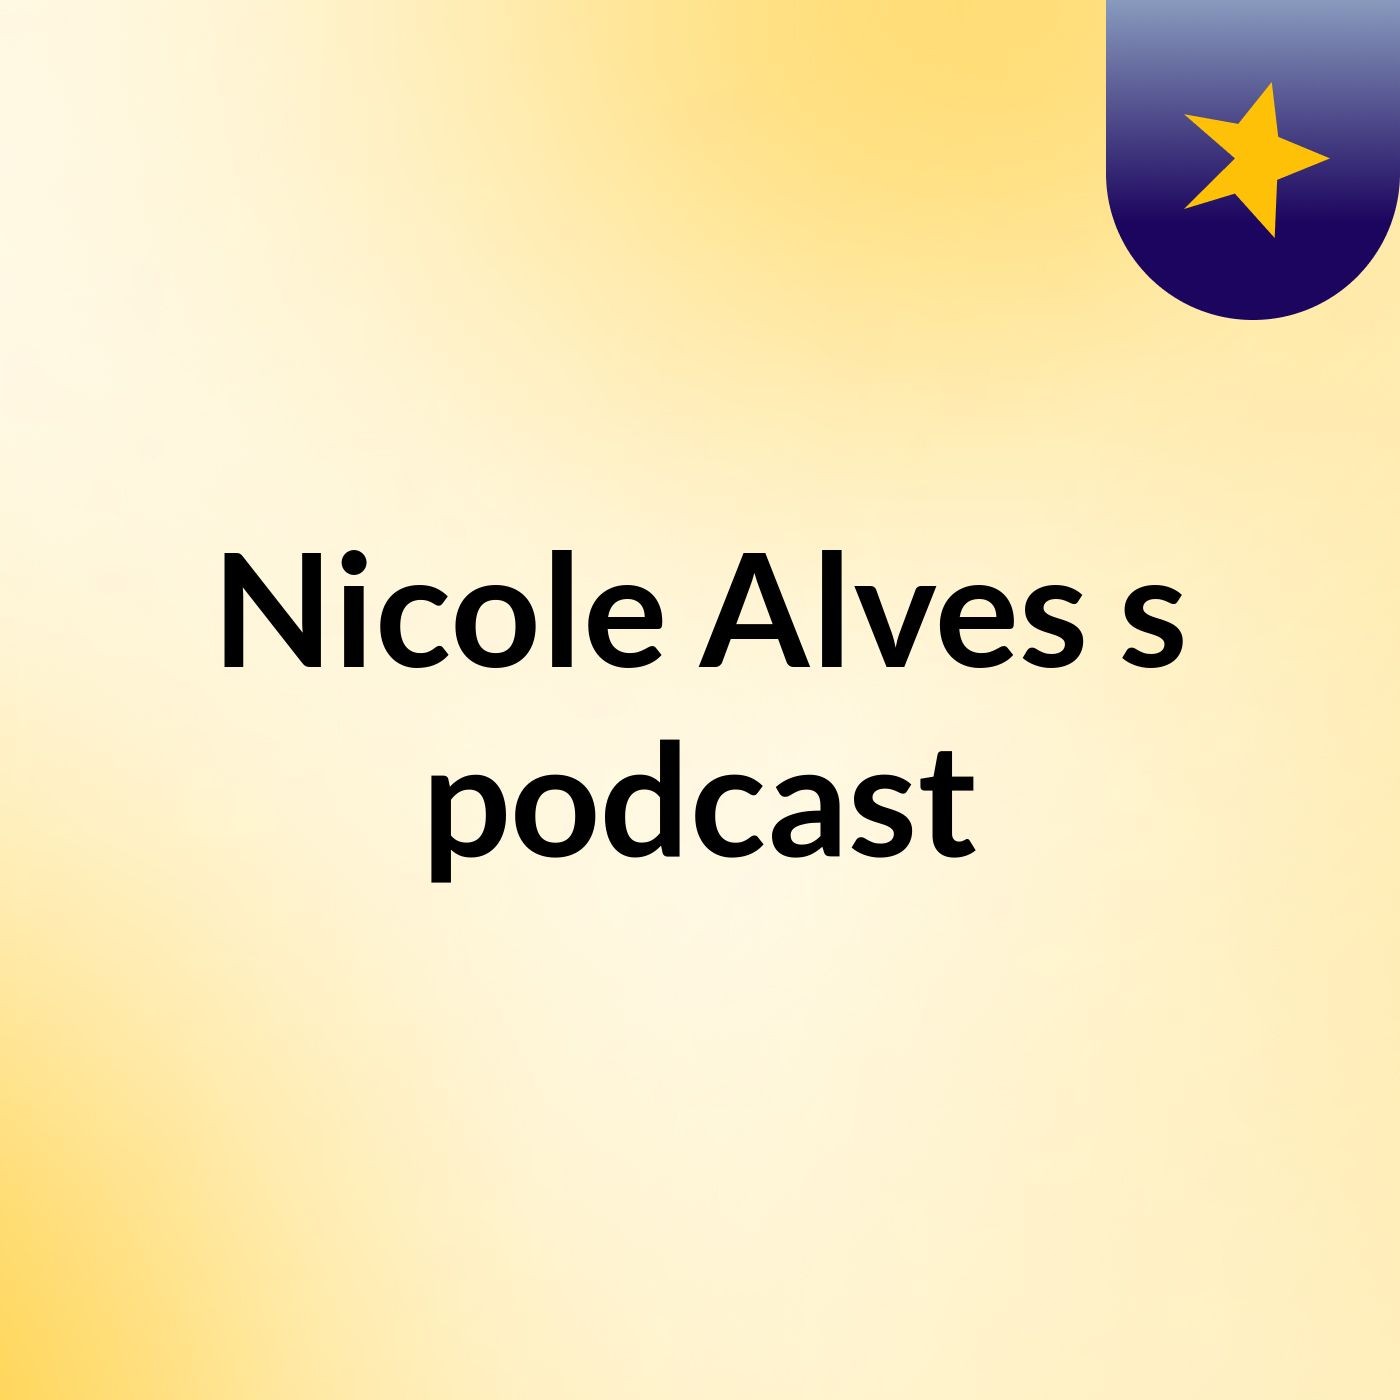 Nicole Alves's podcast